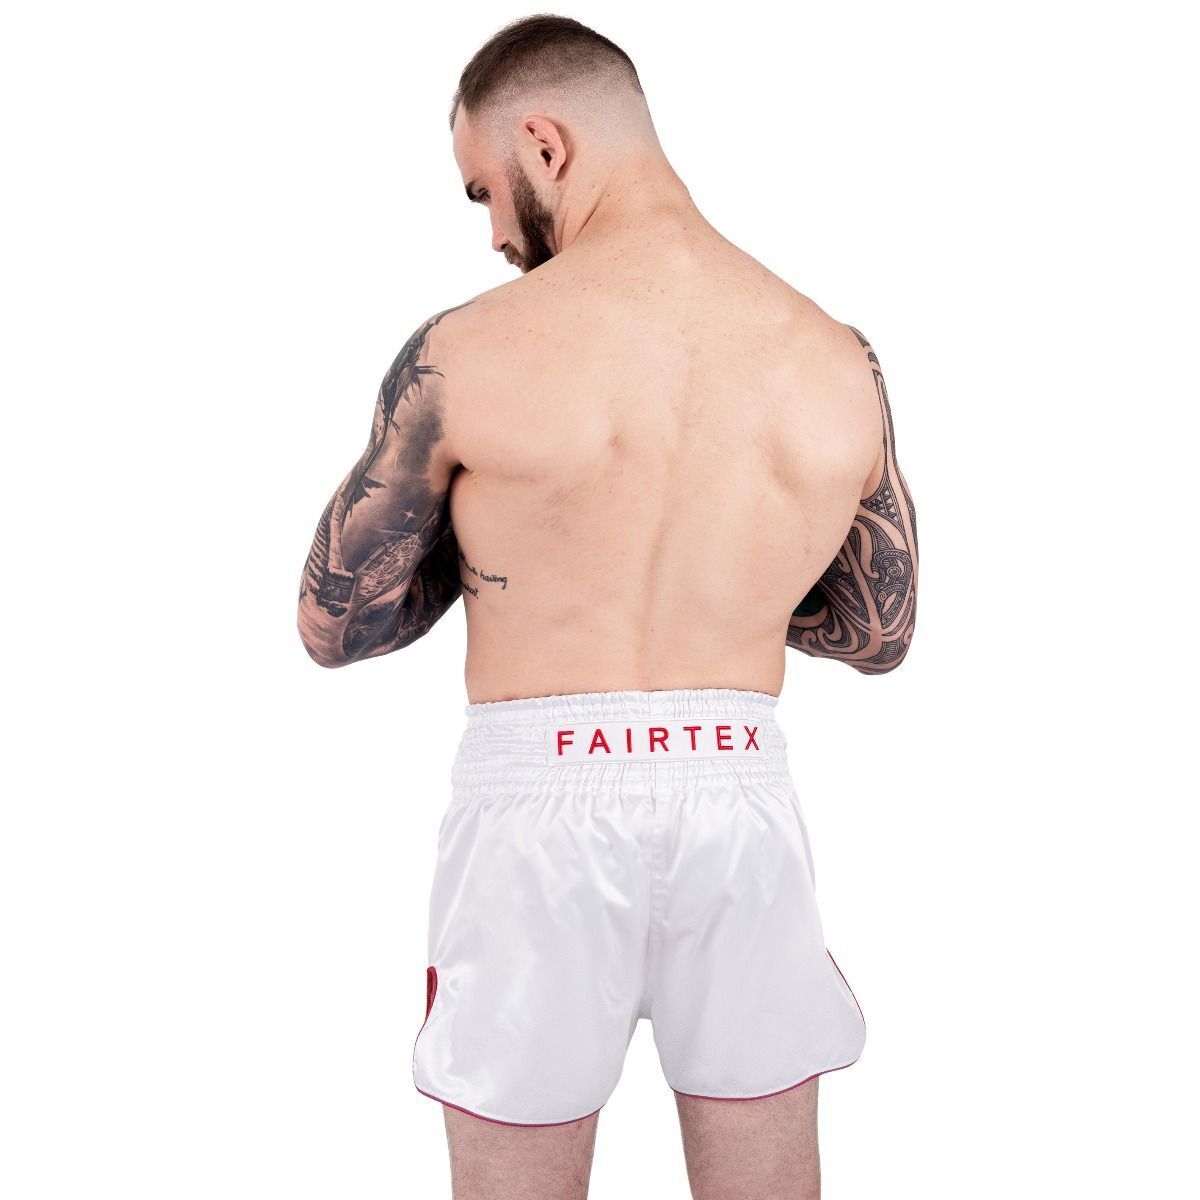 Fairtex Fairtex Muay Thai Boxing Shorts Satoru White BS1908 